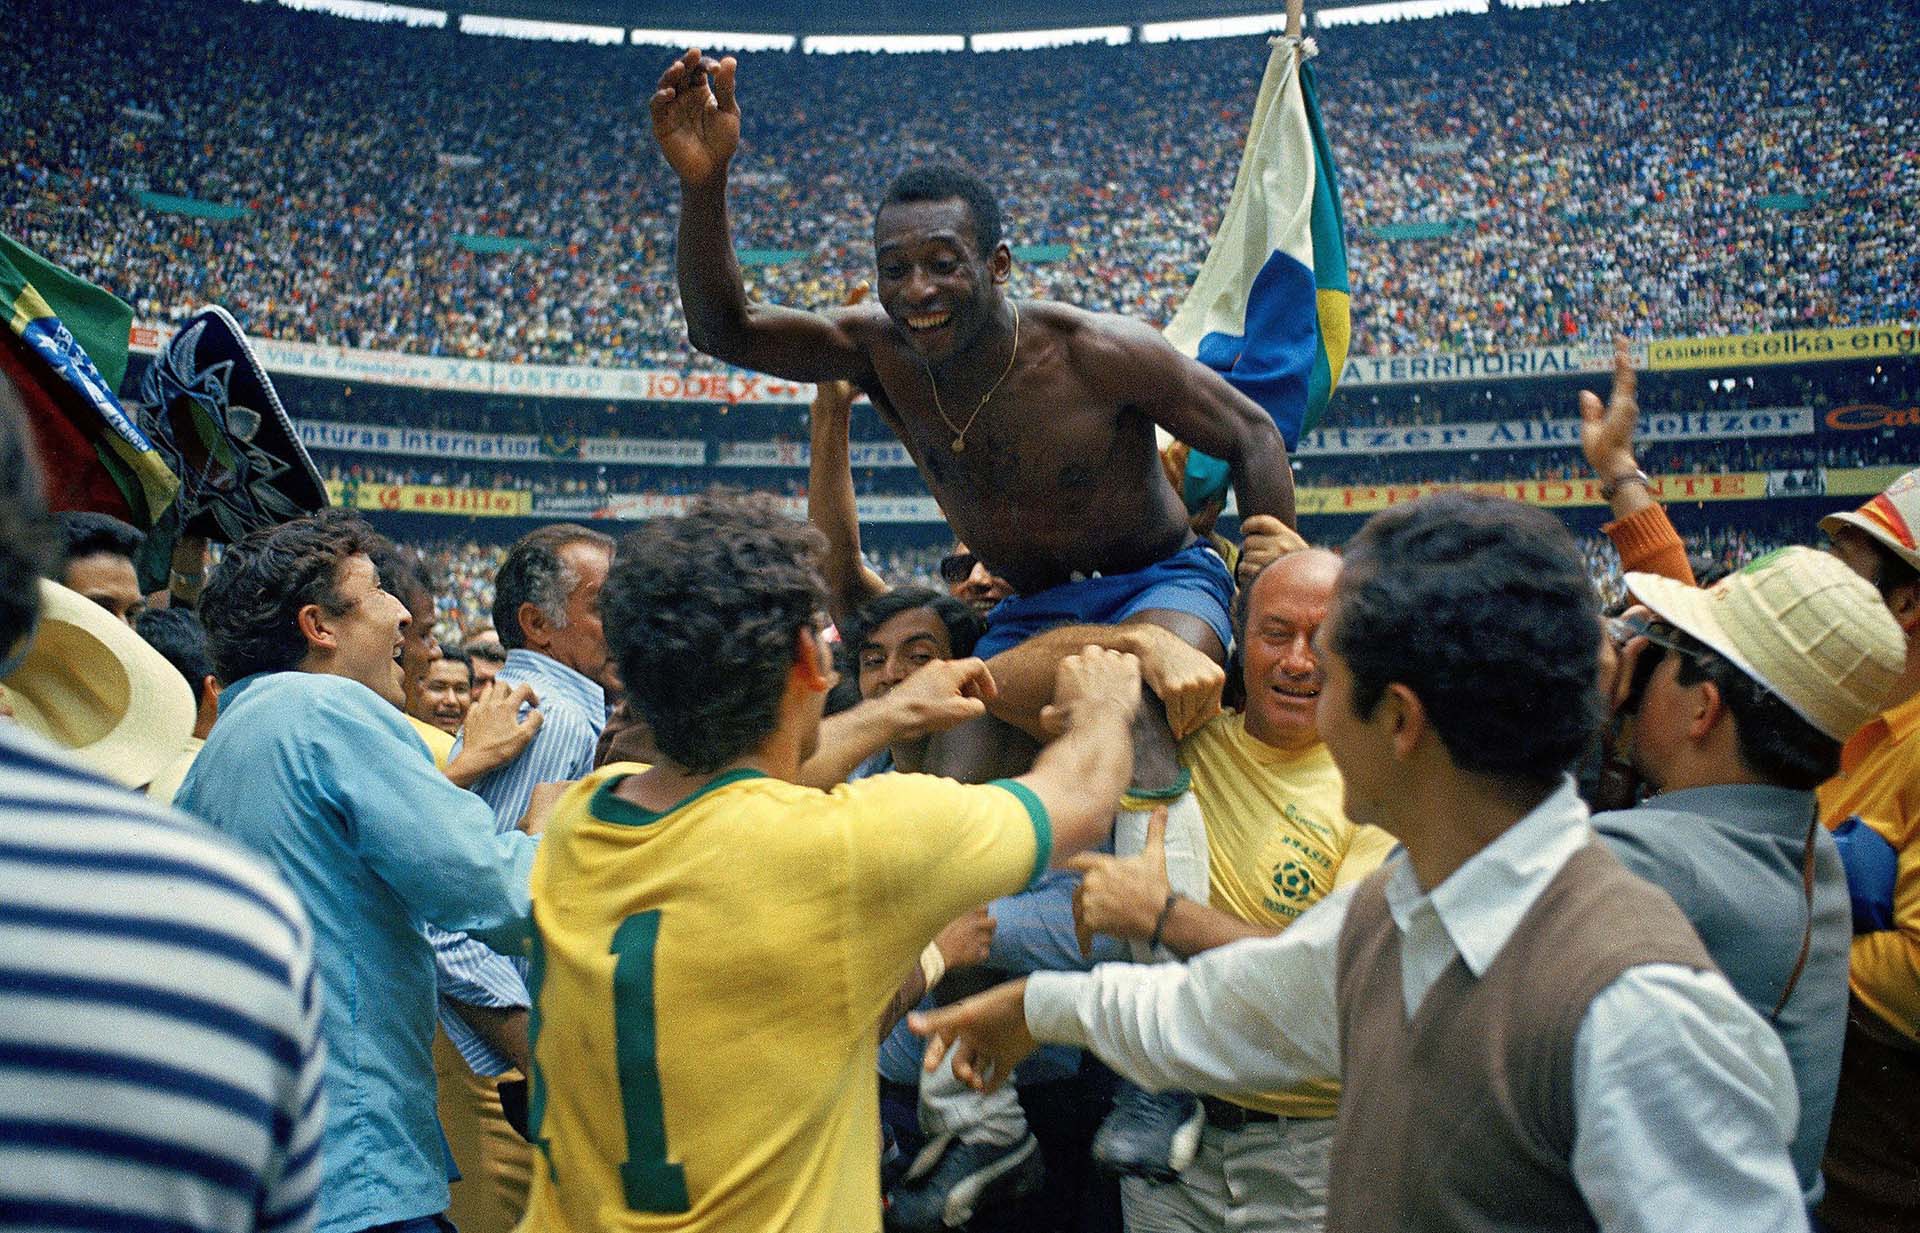 Una imagen icónica en la carrera de Edson Arantes Do Nascimento, Pelé, el día que ganó el Mundial de 1970 (Foto: Alessandro Sabattini/Getty Images)